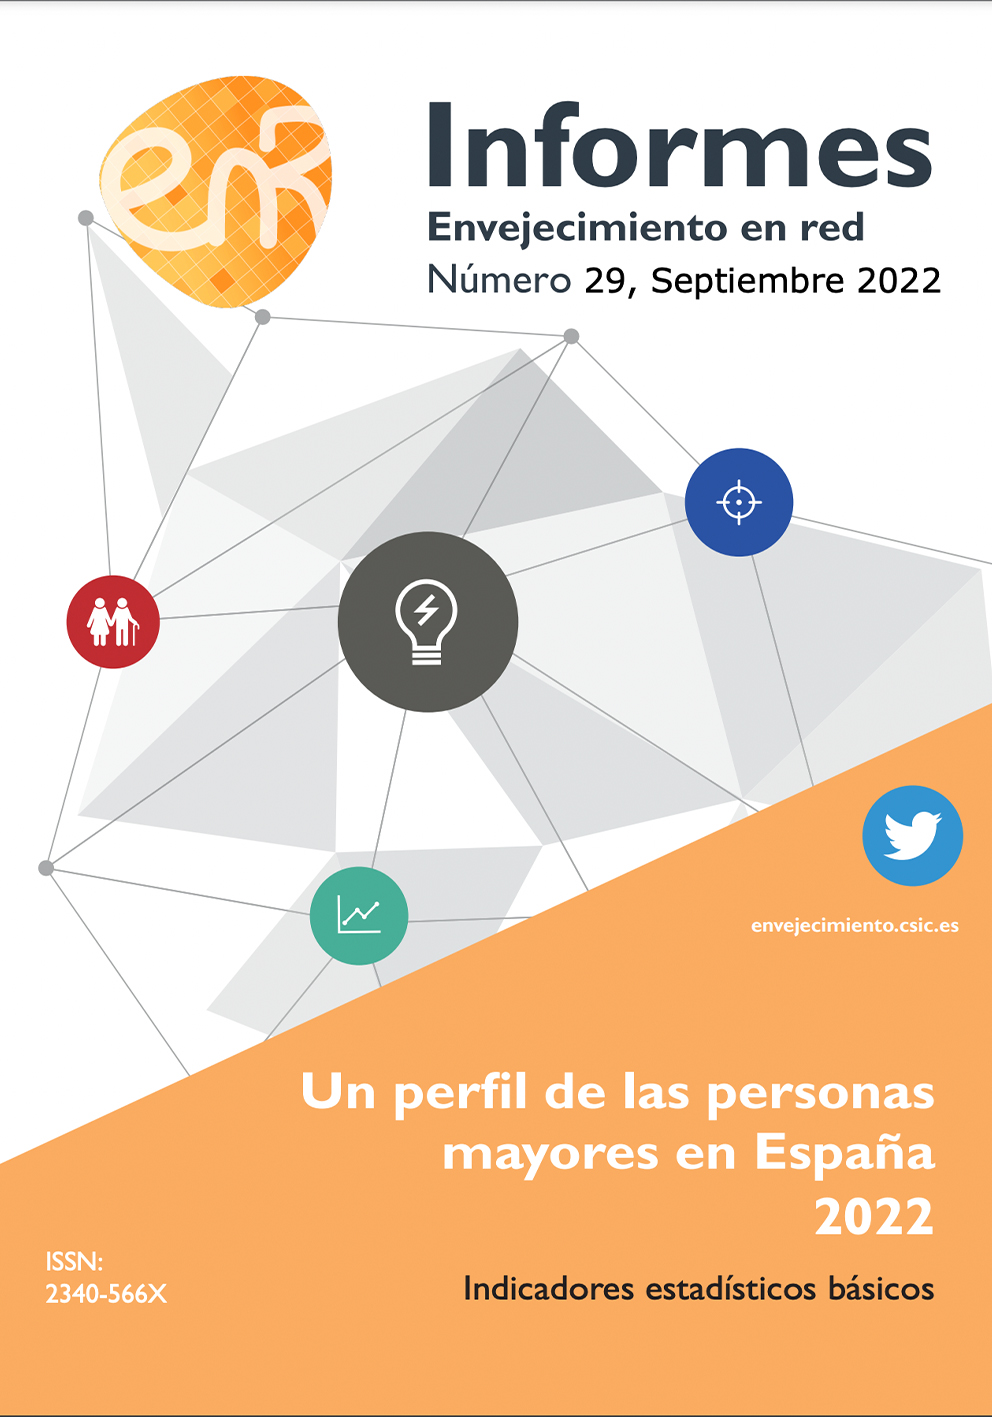 Un perfil de las personas mayores en España, 2022. Indicadores estadísticos básicos